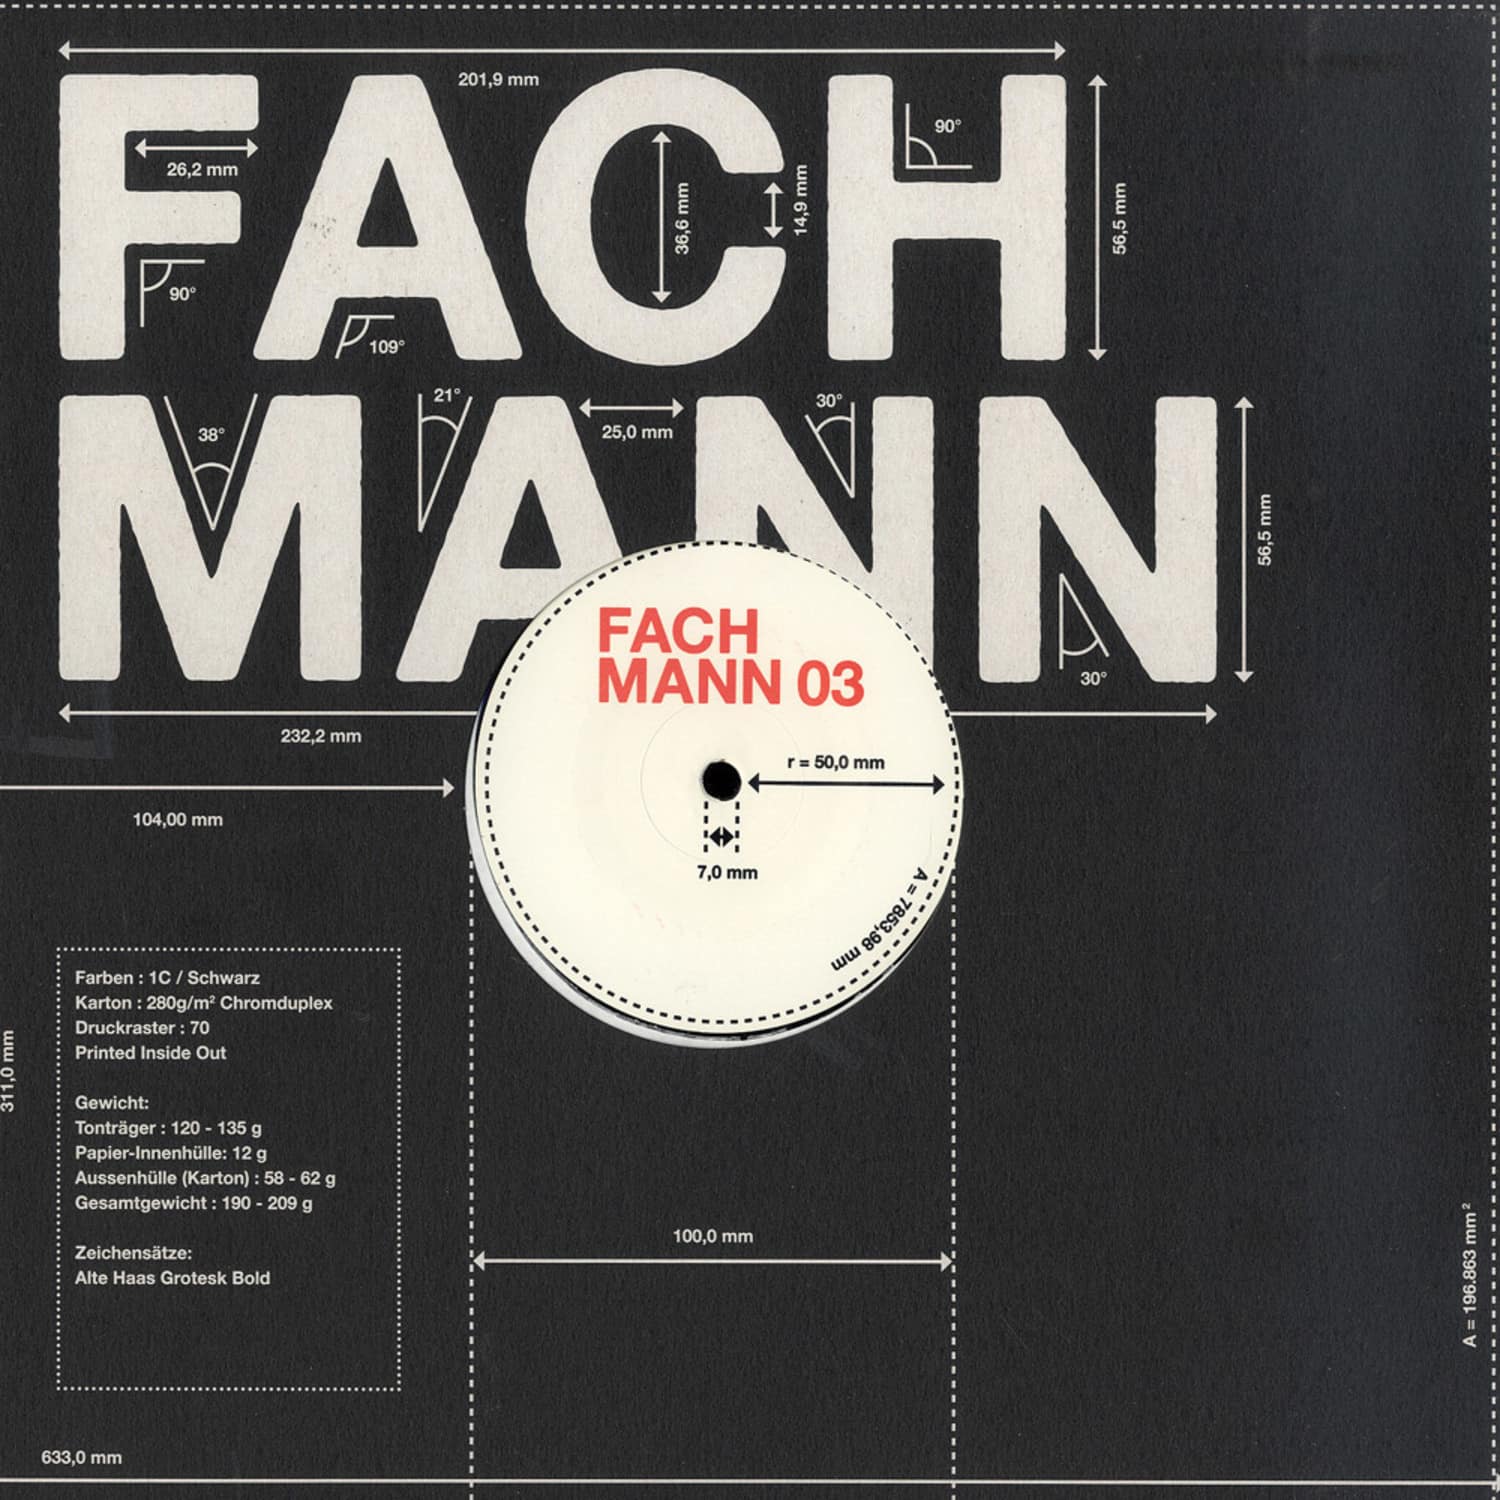 Fachmann - FACHMANN 03